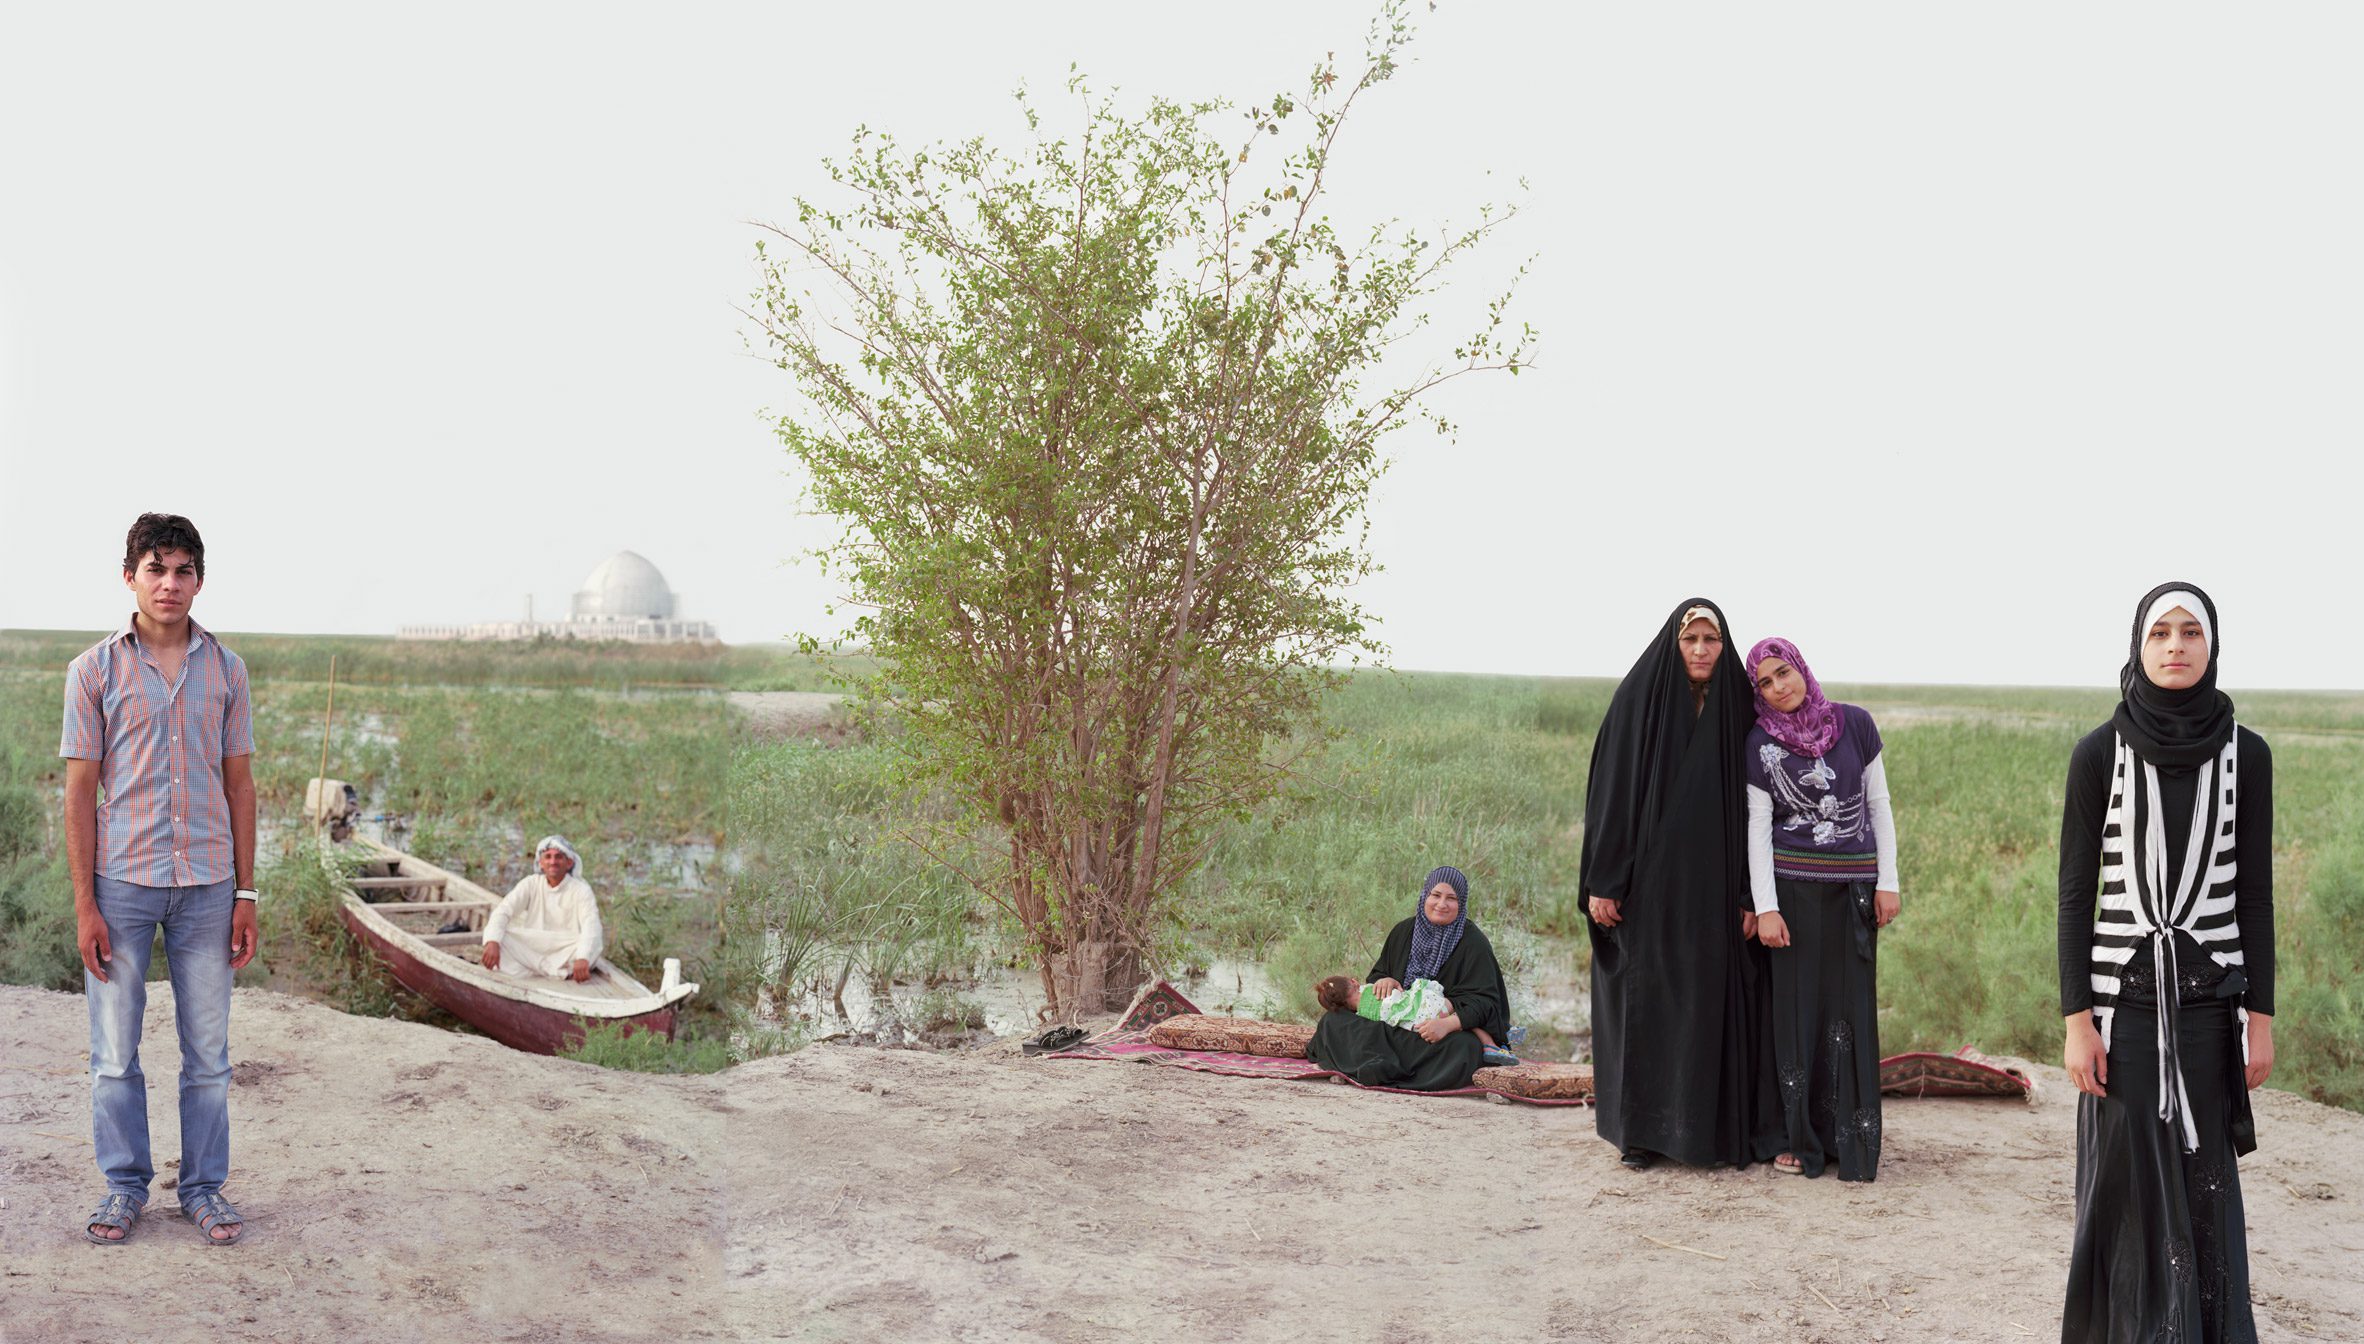 Eden in Iraq, from Water Pressure exhibition at MK&G